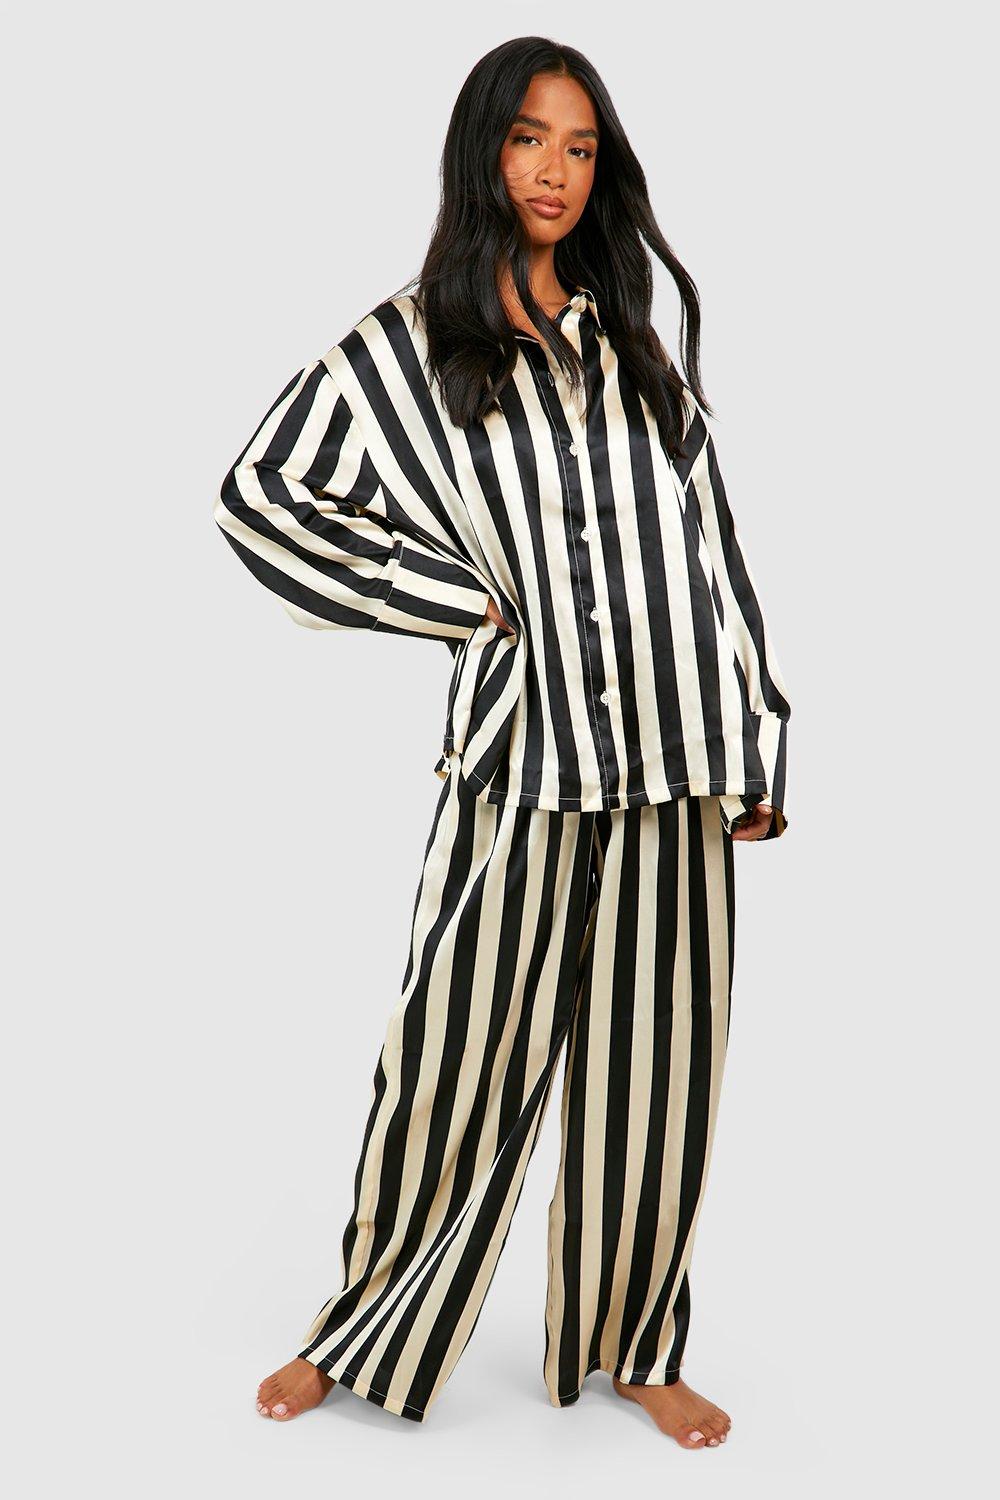 Satin pajamas with black stripes